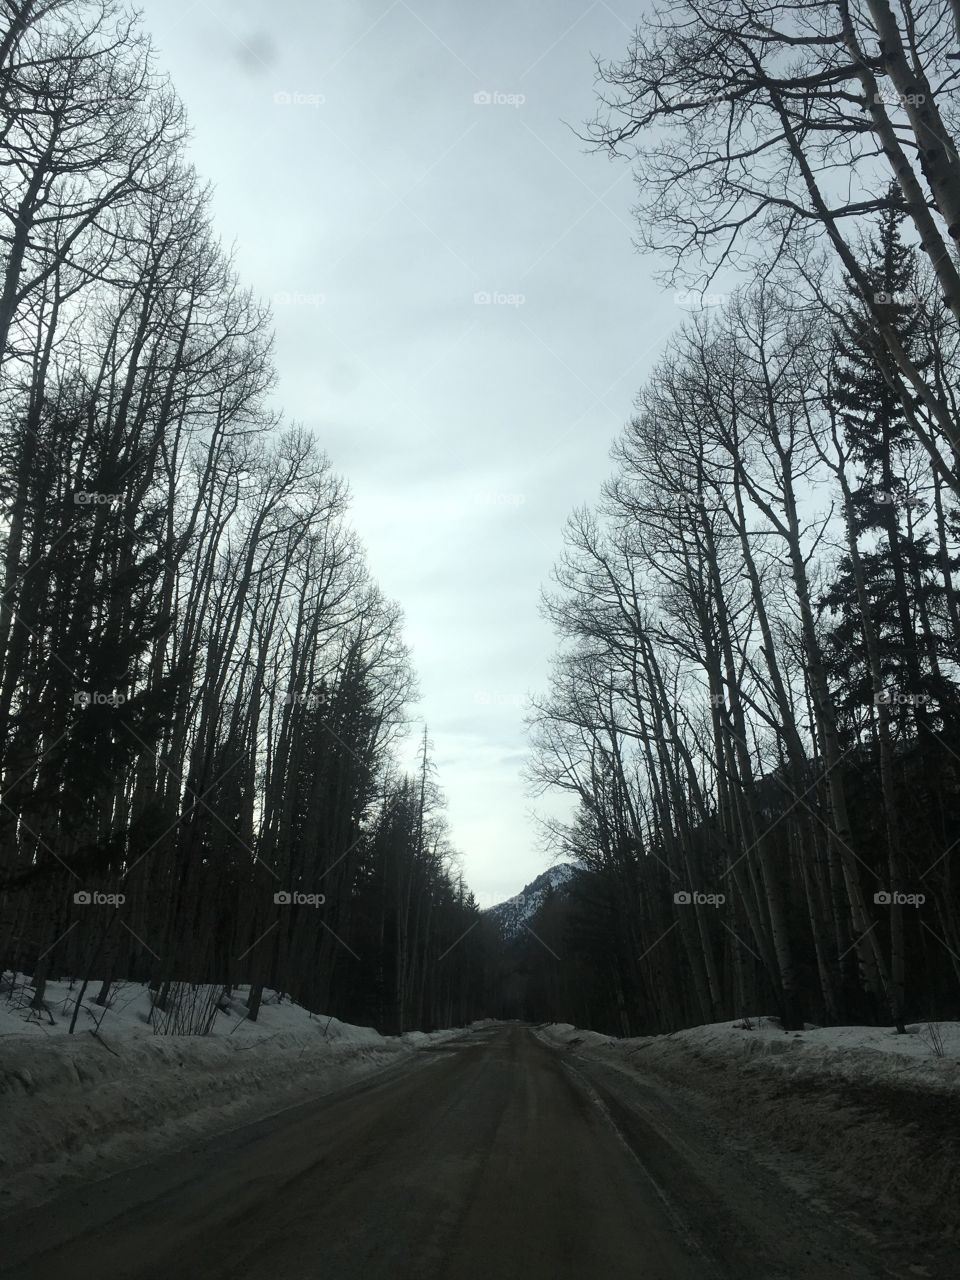 Colorado drive